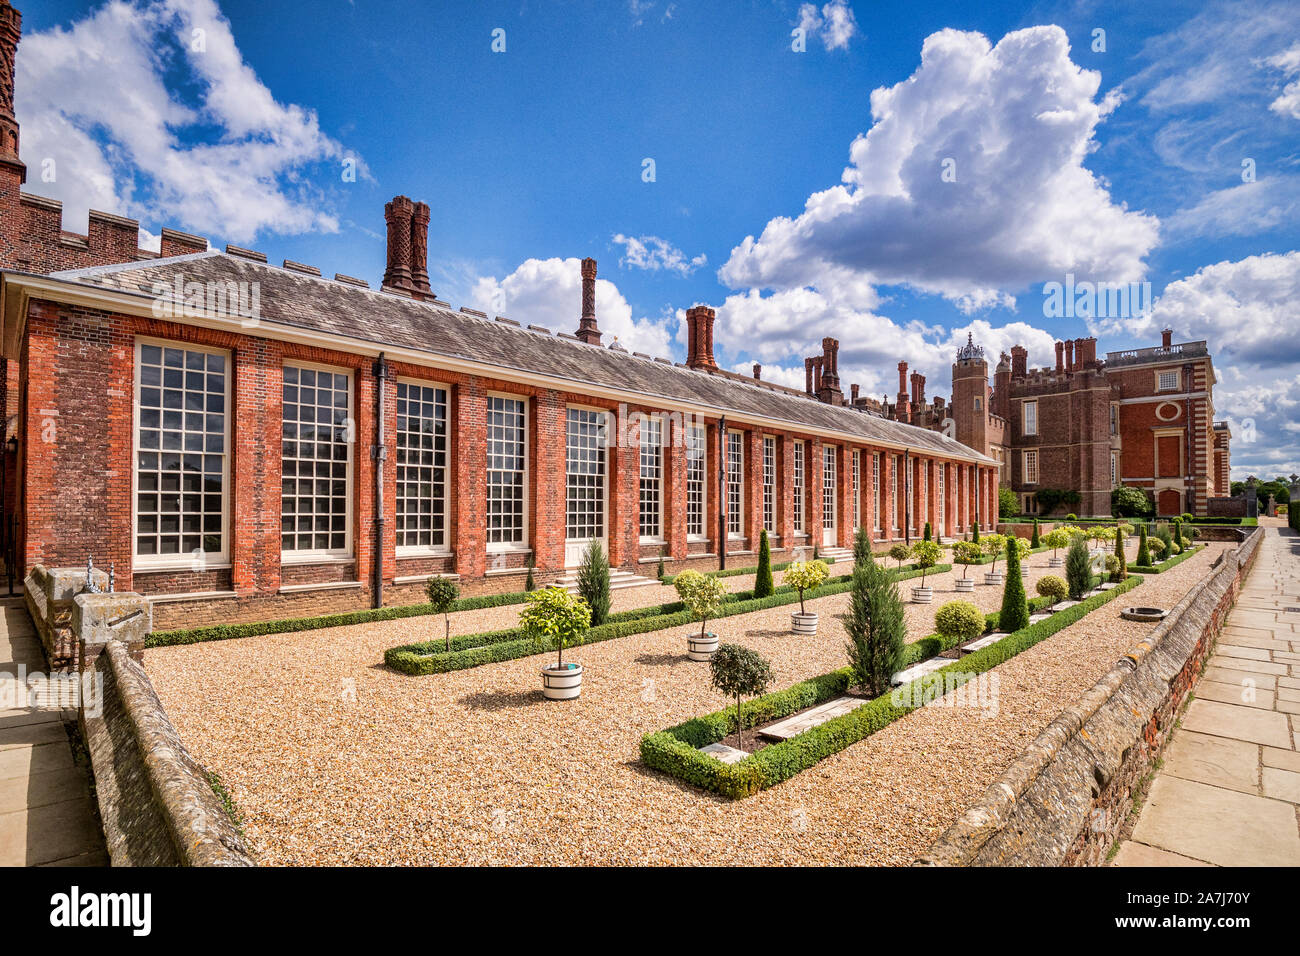 9 Giugno 2019: Richmond upon Thames, London, Regno Unito - l'Orangery a Hampton Court Palace, l'ex residenza reale nella zona ovest di Londra. Foto Stock